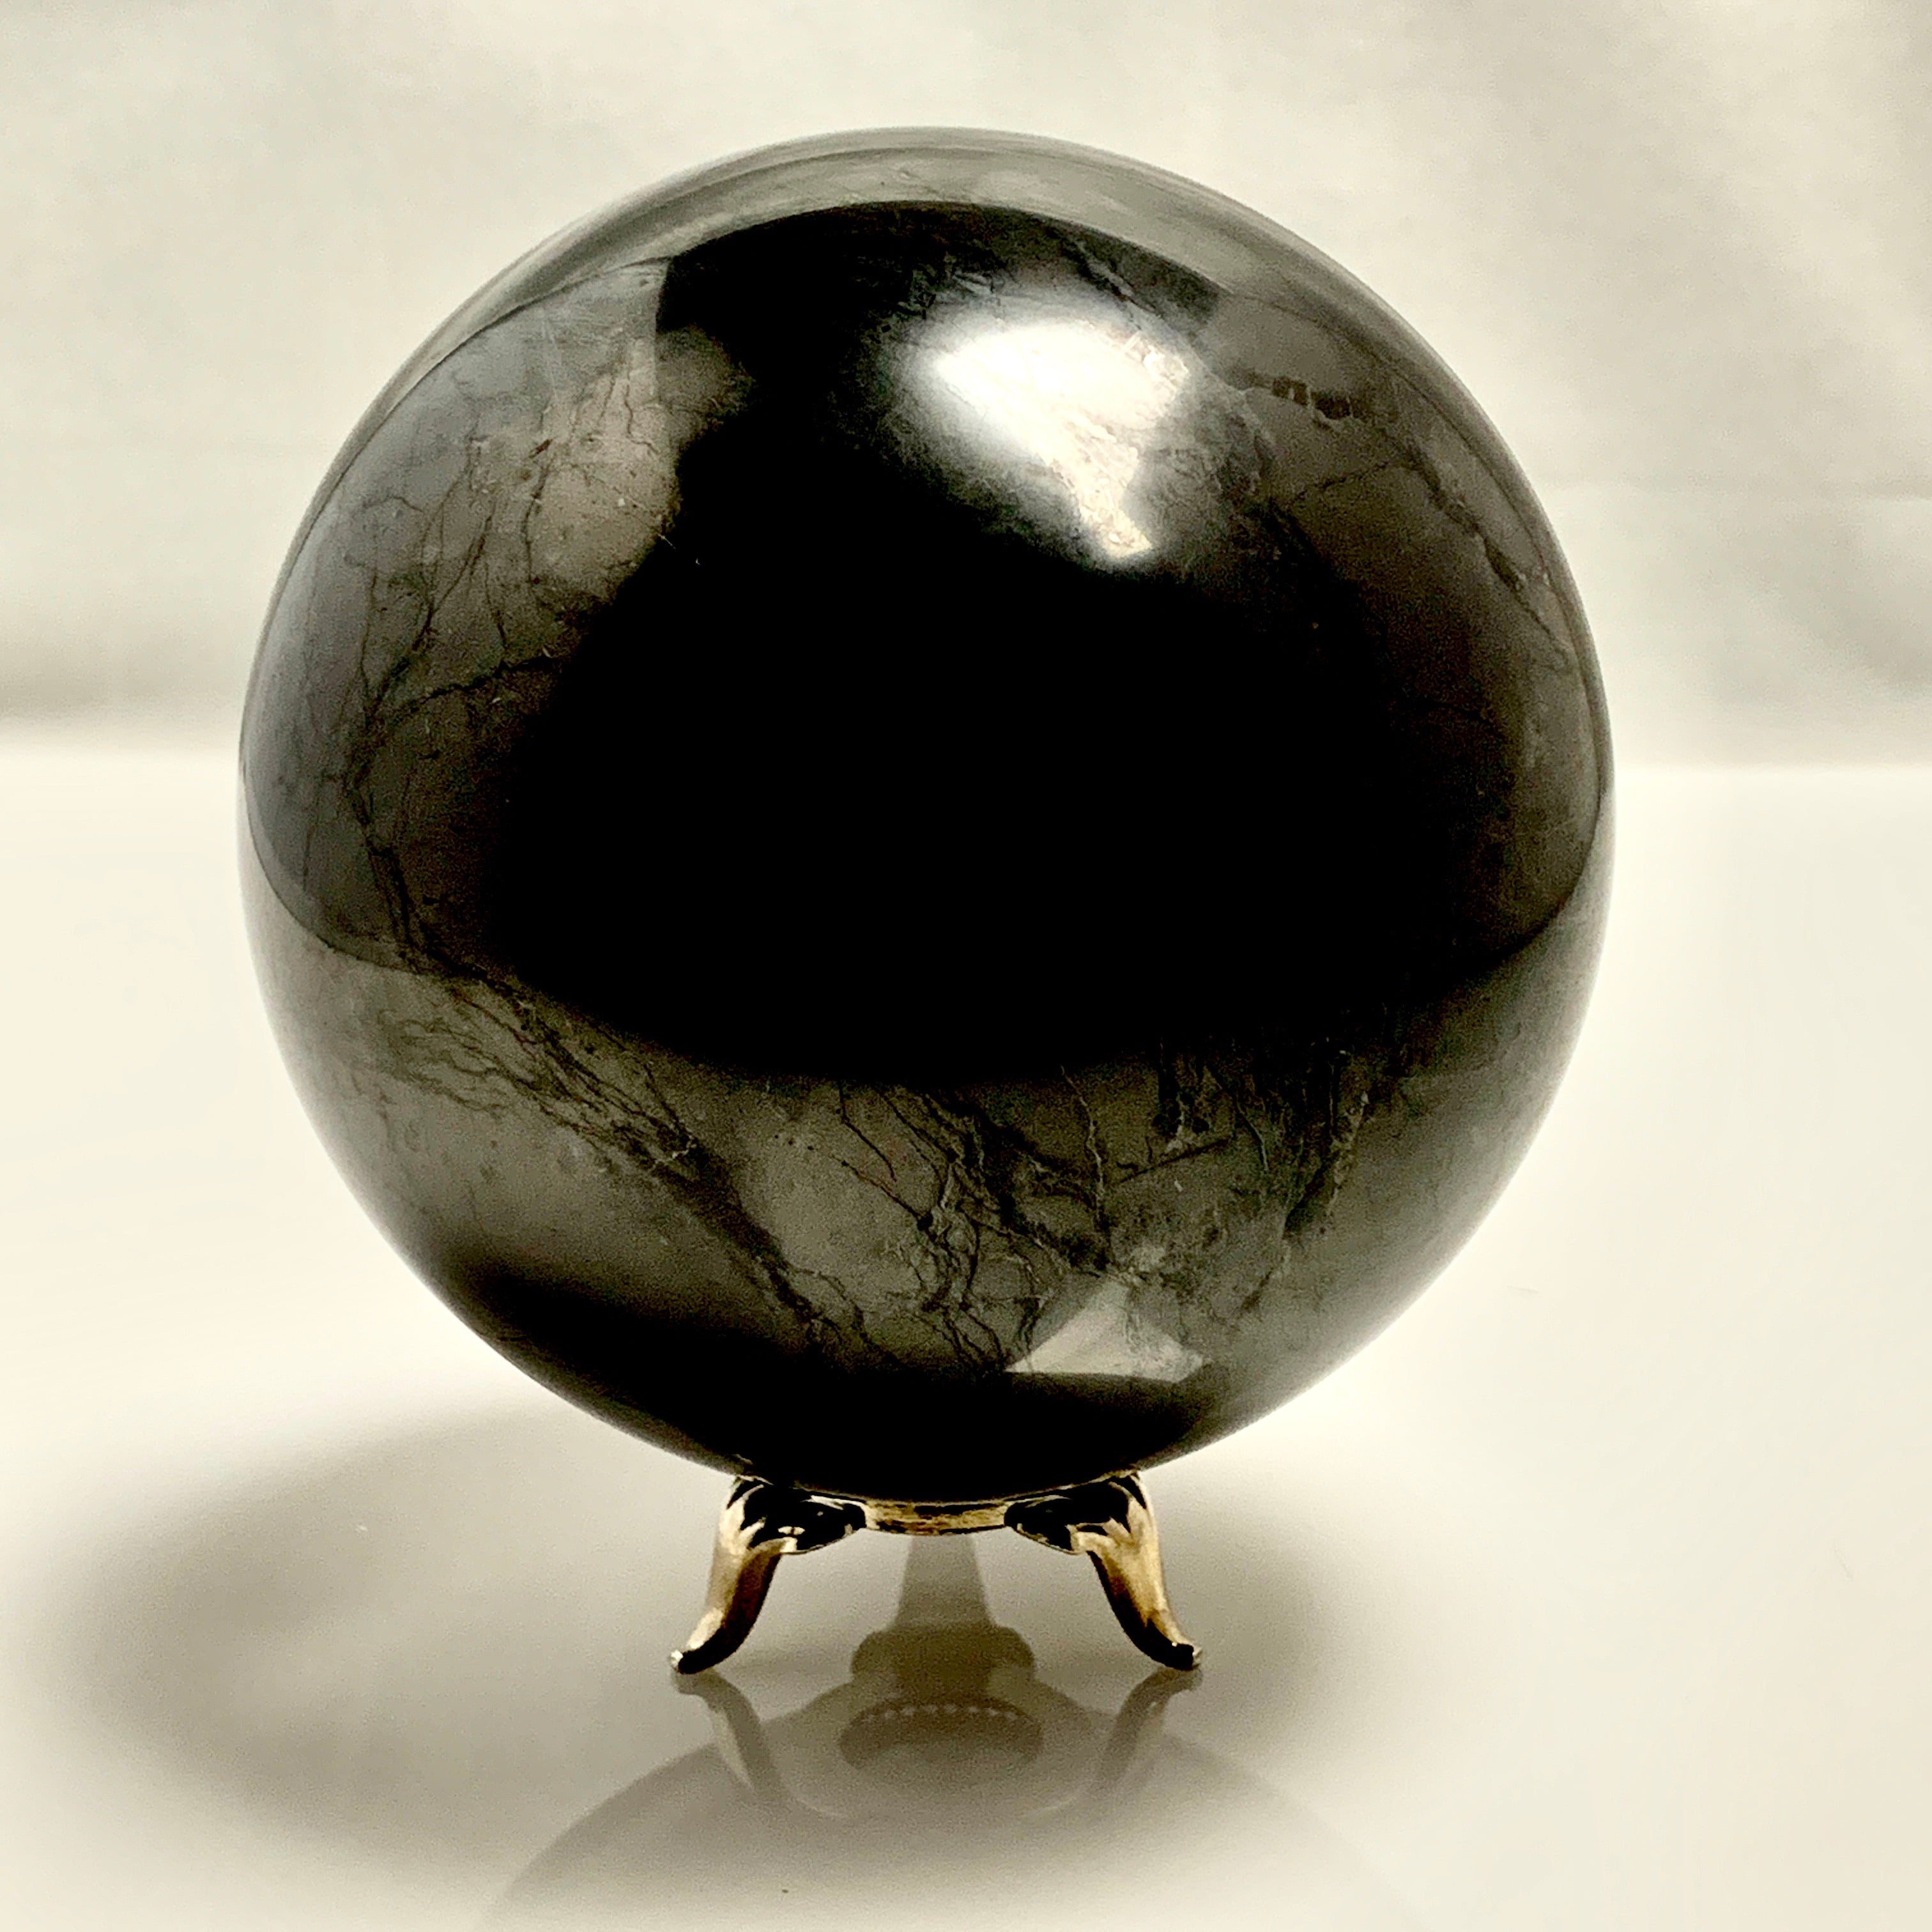 Polished Shungite Sphere